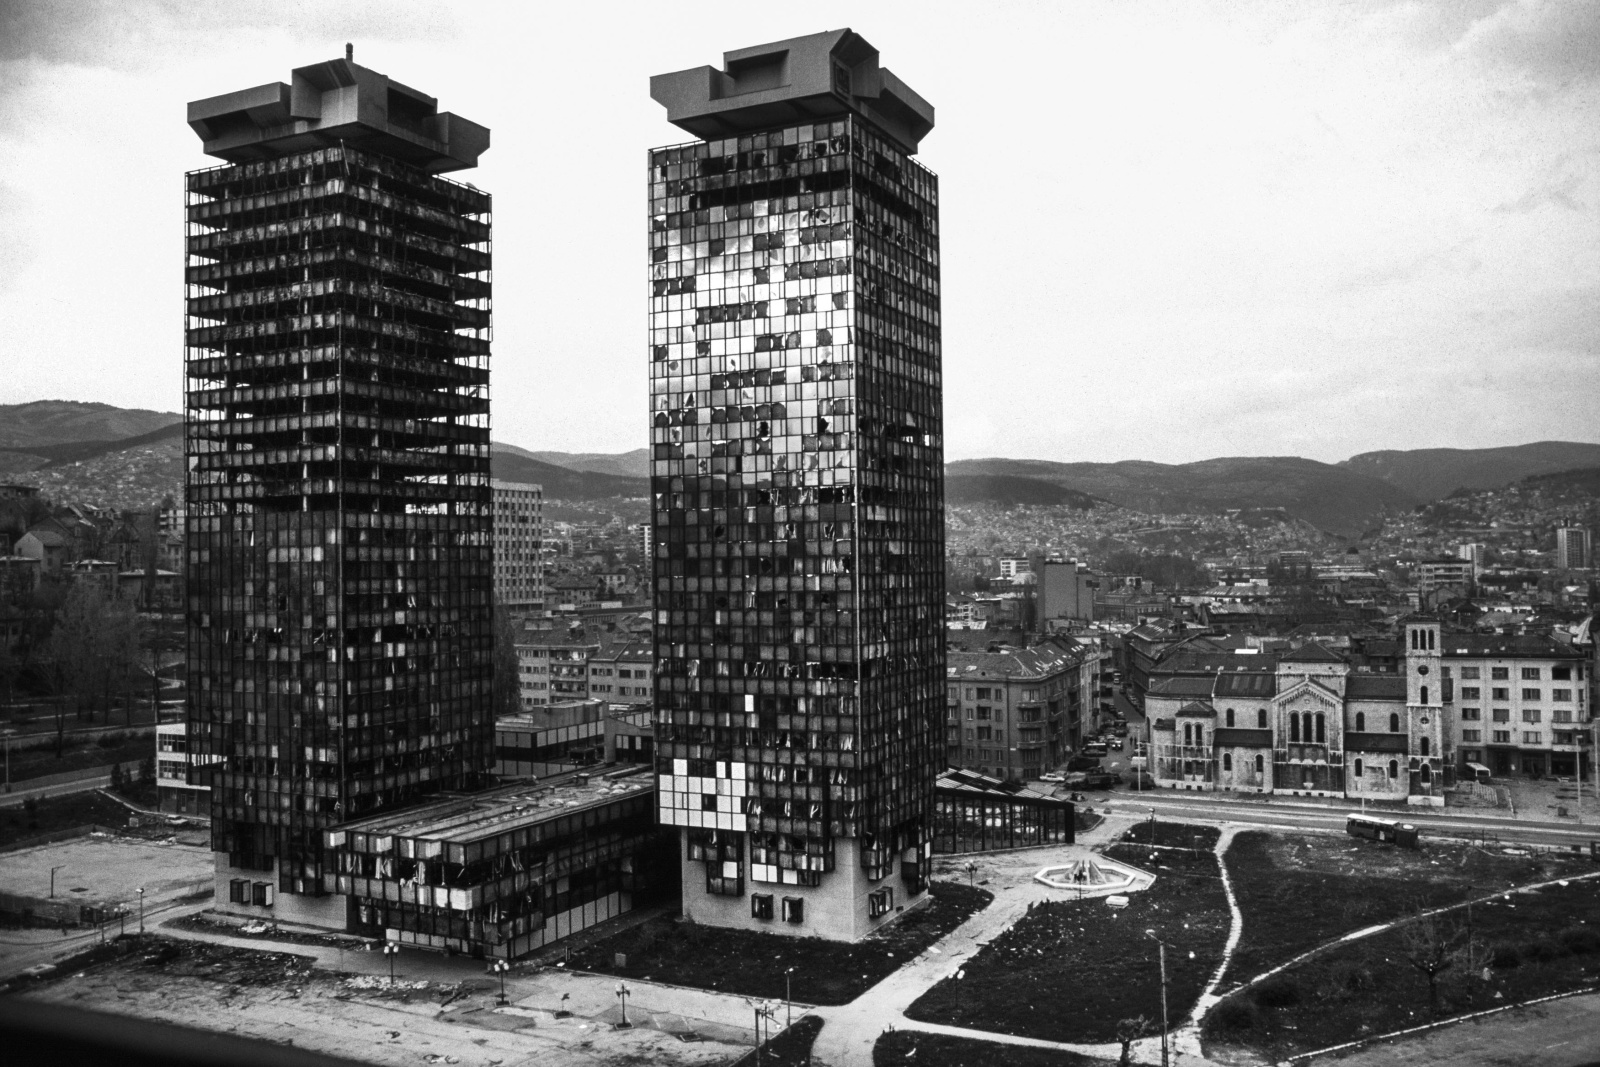 Sarajevo 1993 - Le Torri gemelle UNIS danneggiate dai bombardamenti dall'esercito serbo che sparava dalla collina